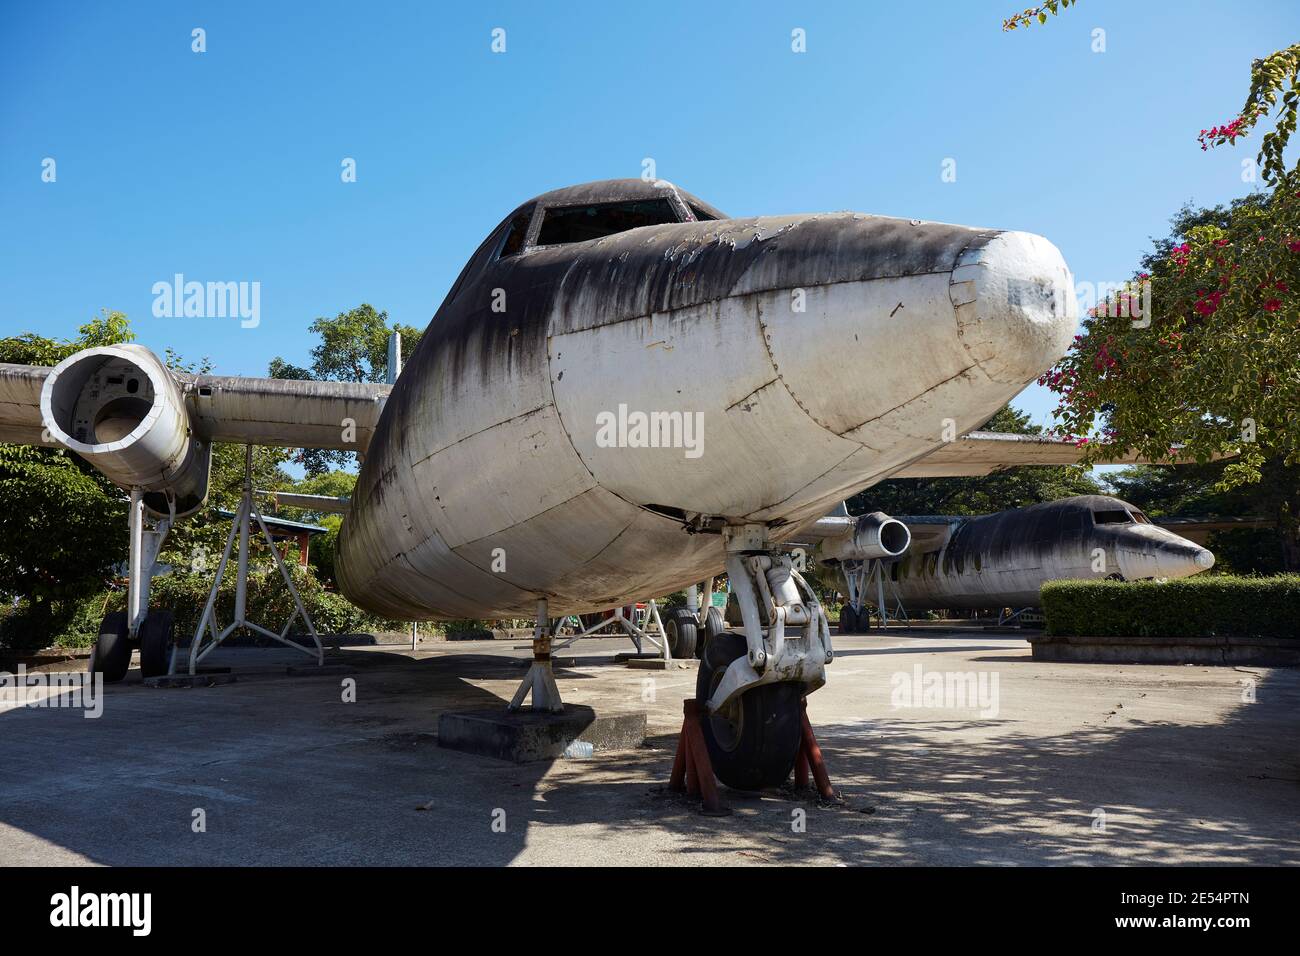 Ancien avion exposé à l'intérieur du parc du peuple, Yangon, Myanmar. Banque D'Images